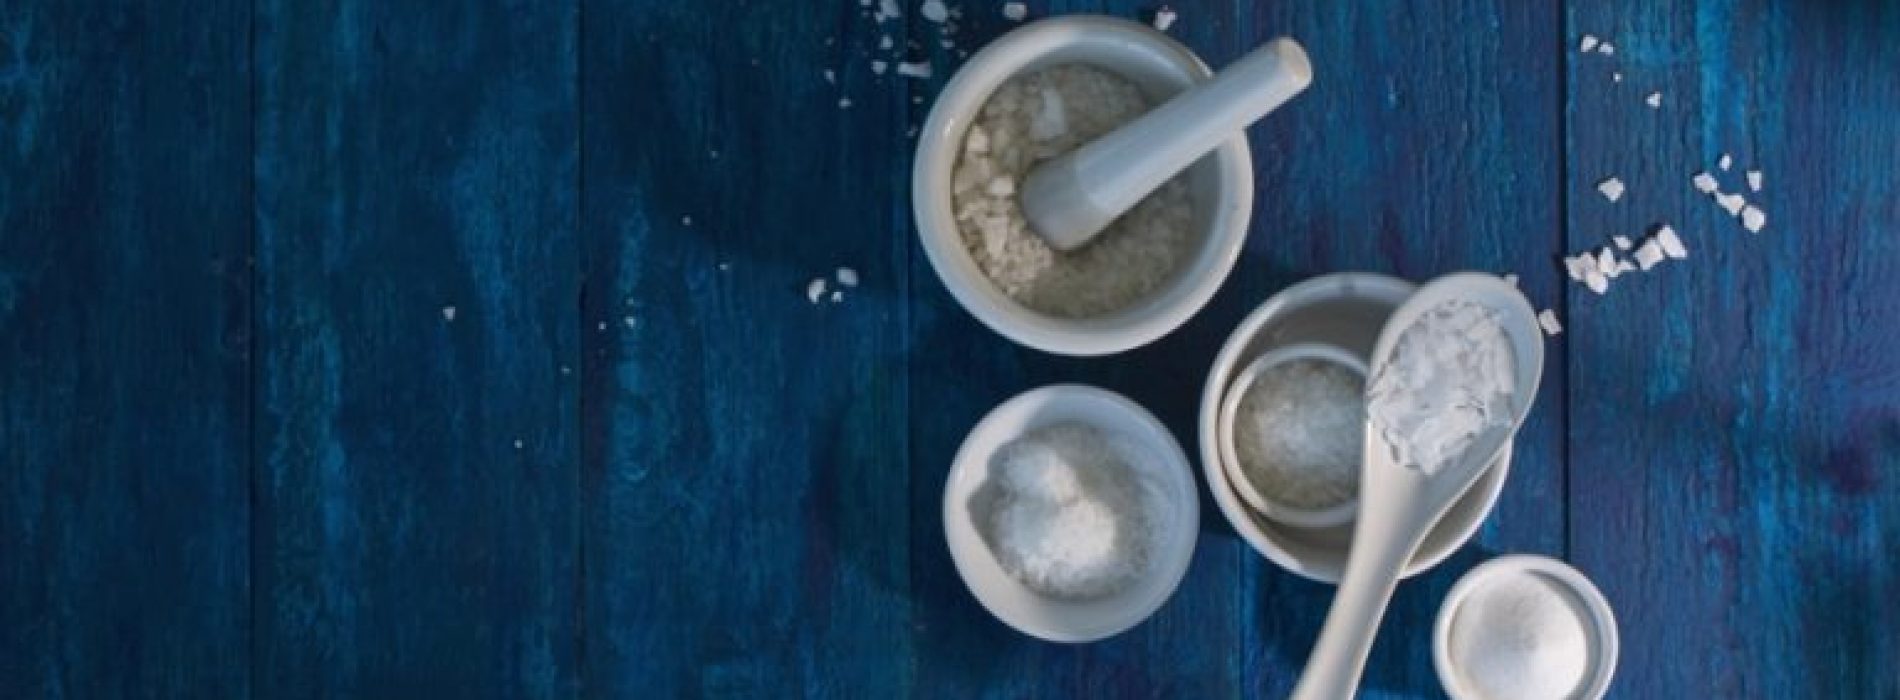 Deze 5 in onze ogen ‘gezonde’ producten bevatten meer zout dan een zak chips!